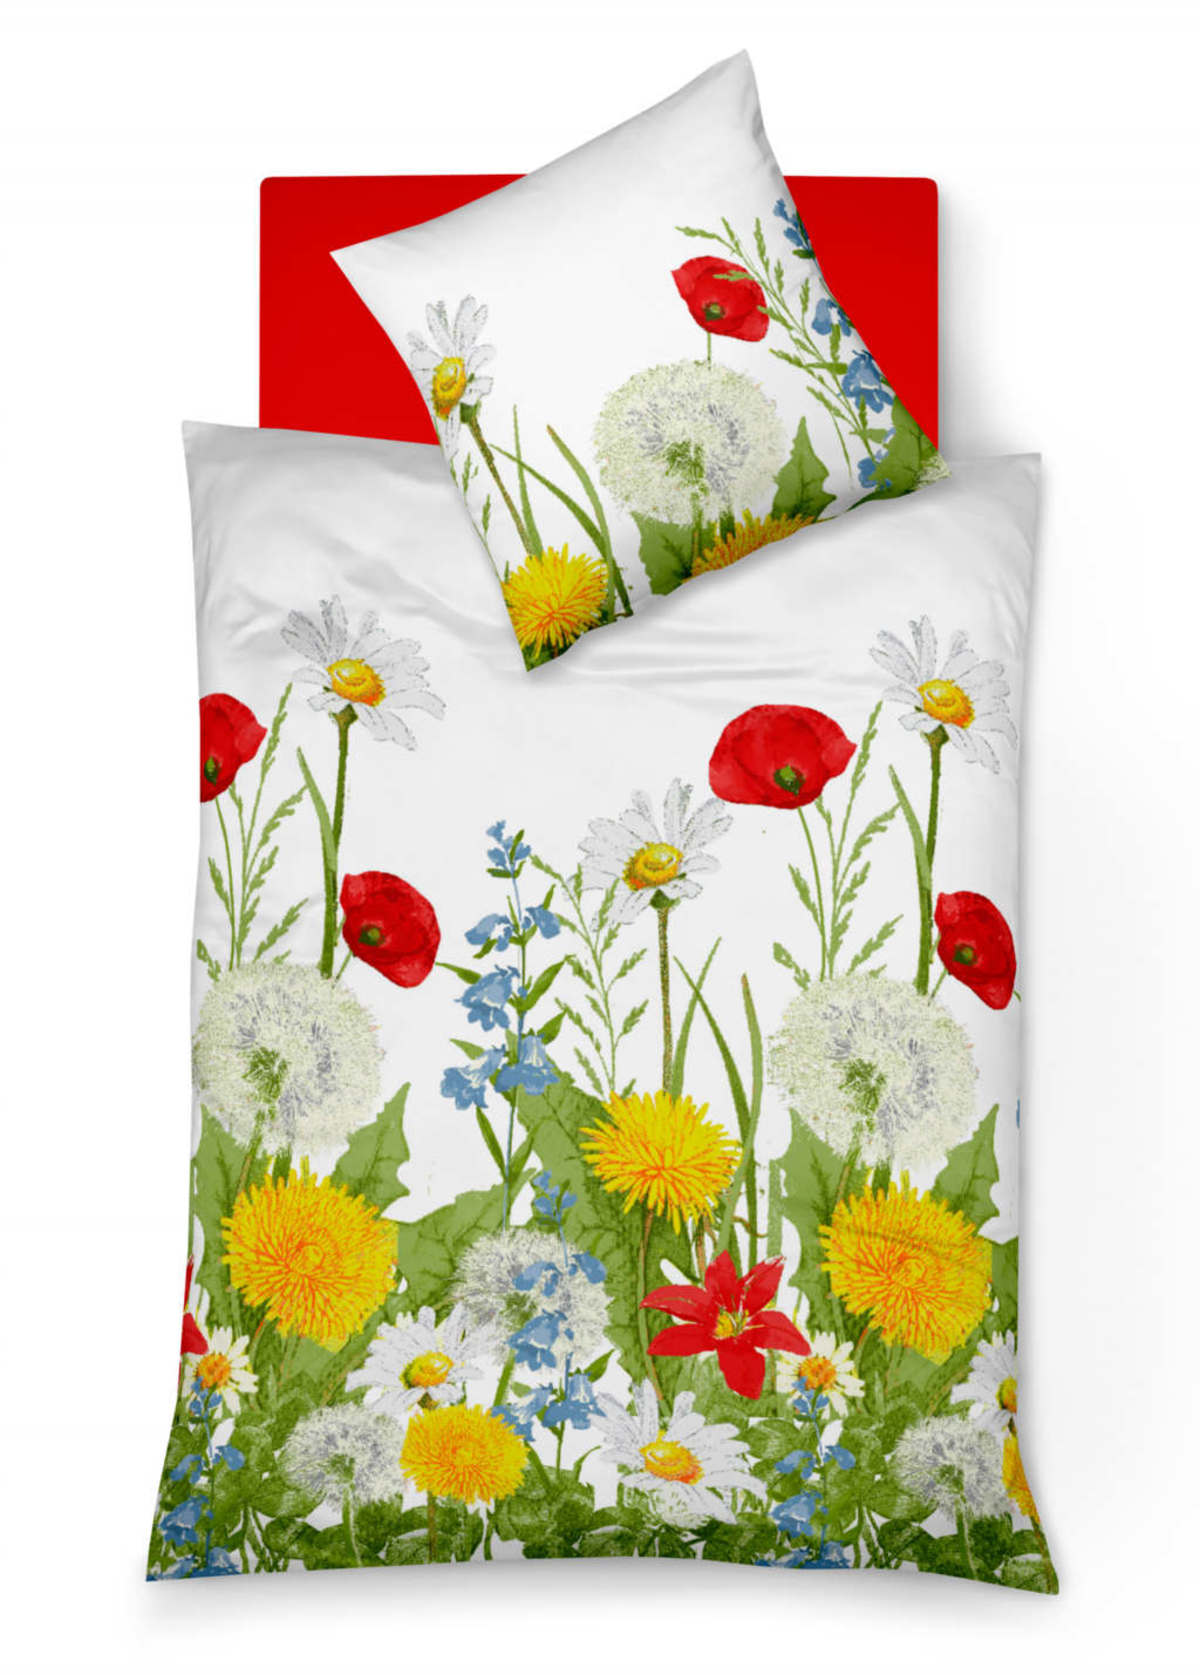 Blumen-Bettwäsche mit Pusteblume und Mohnblume